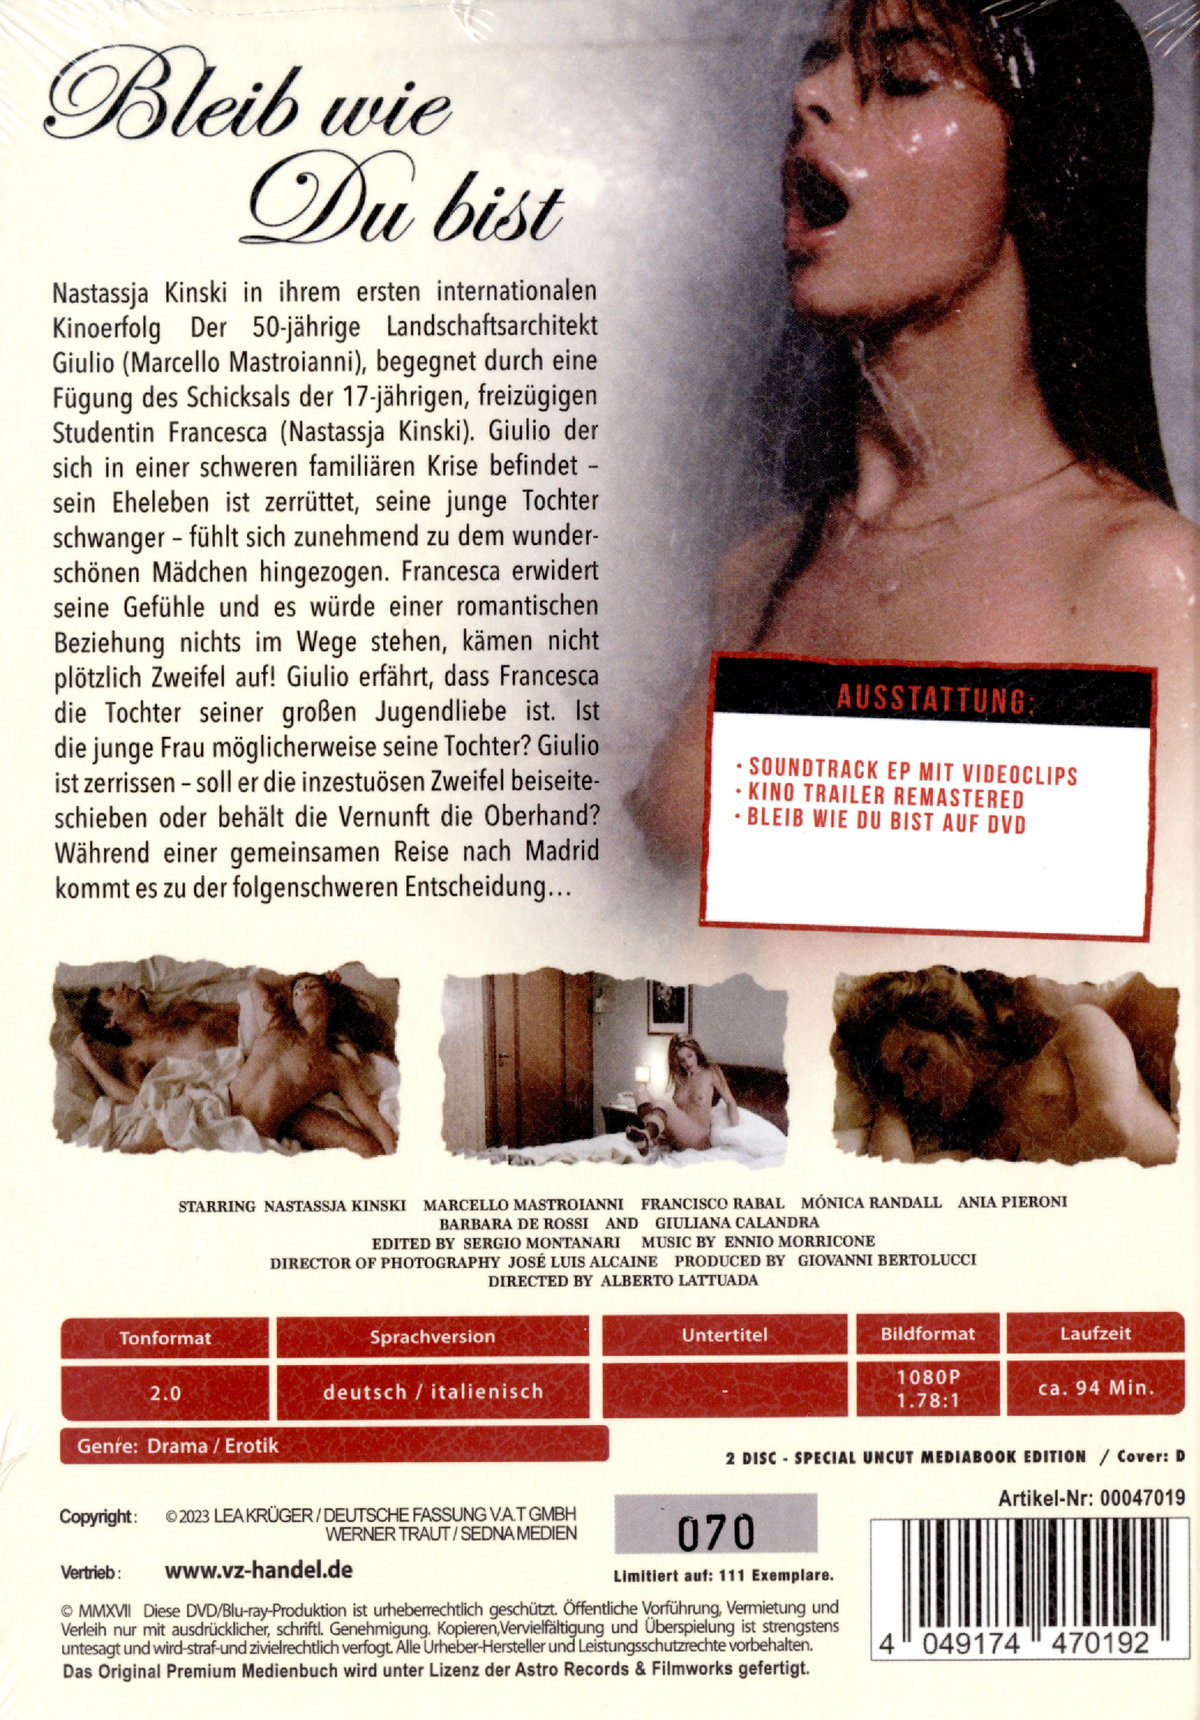 Bleib wie du bist - Cosi come sei - Uncut Mediabook Edition (DVD+blu-ray) (D)